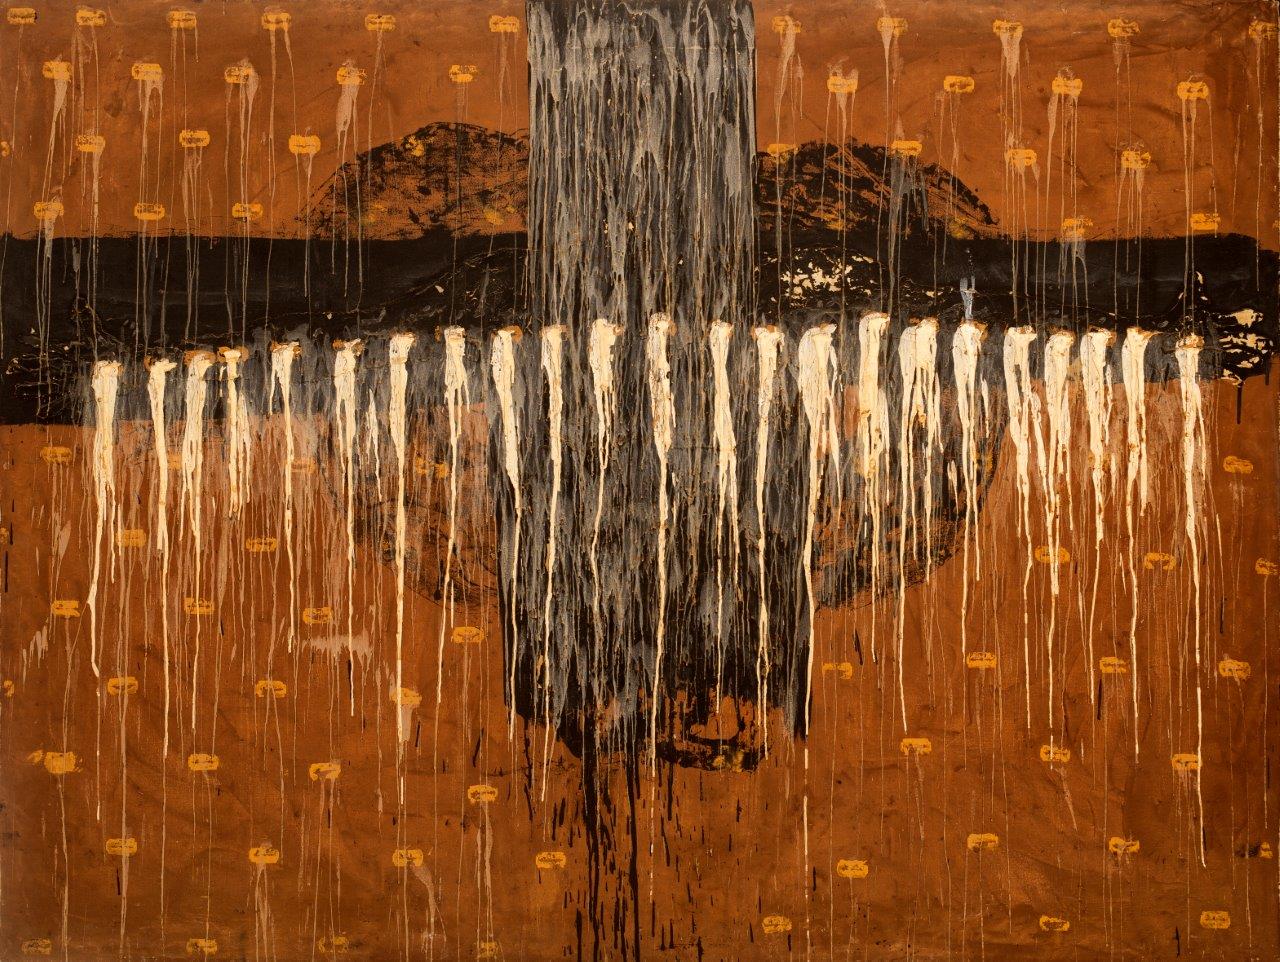 “Bajo la superficie”, 2008. De la serie “Mapas del cuerpo”. Óleo, objetos y parafina sobre lienzo, 140 x 200 cm.
